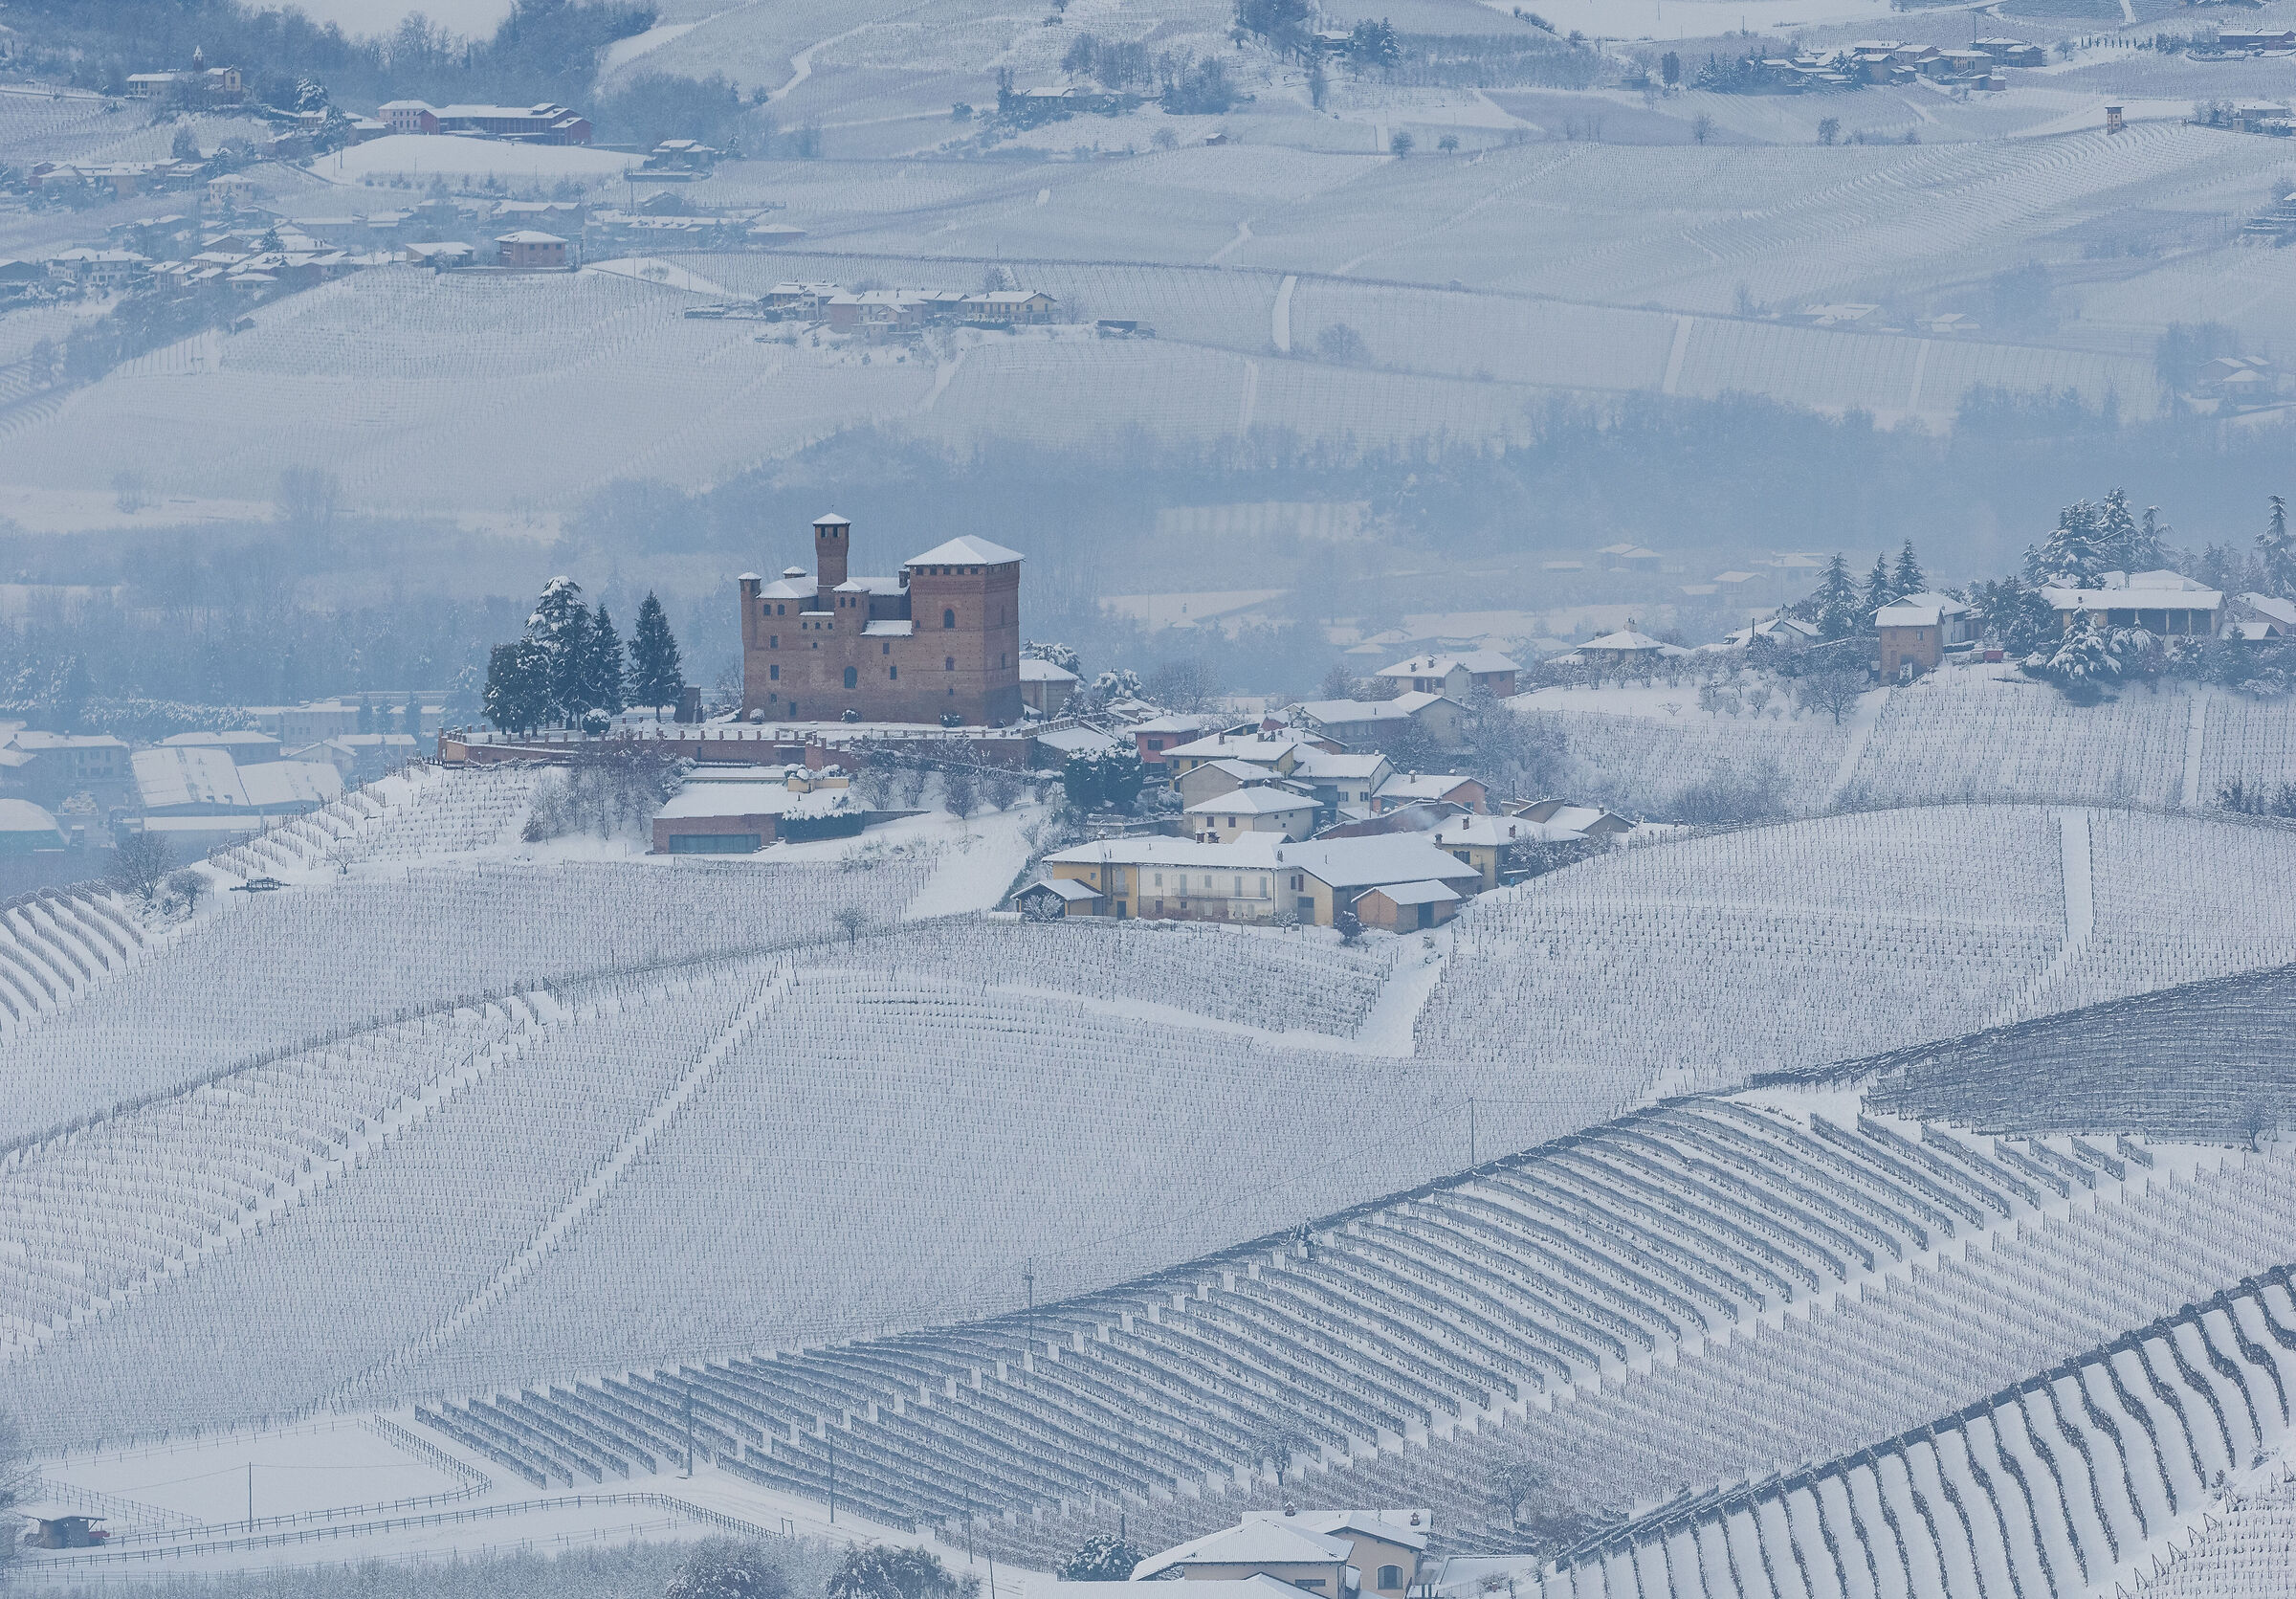 il Castello di Grinzane Cavour e le vigne d'inverno...